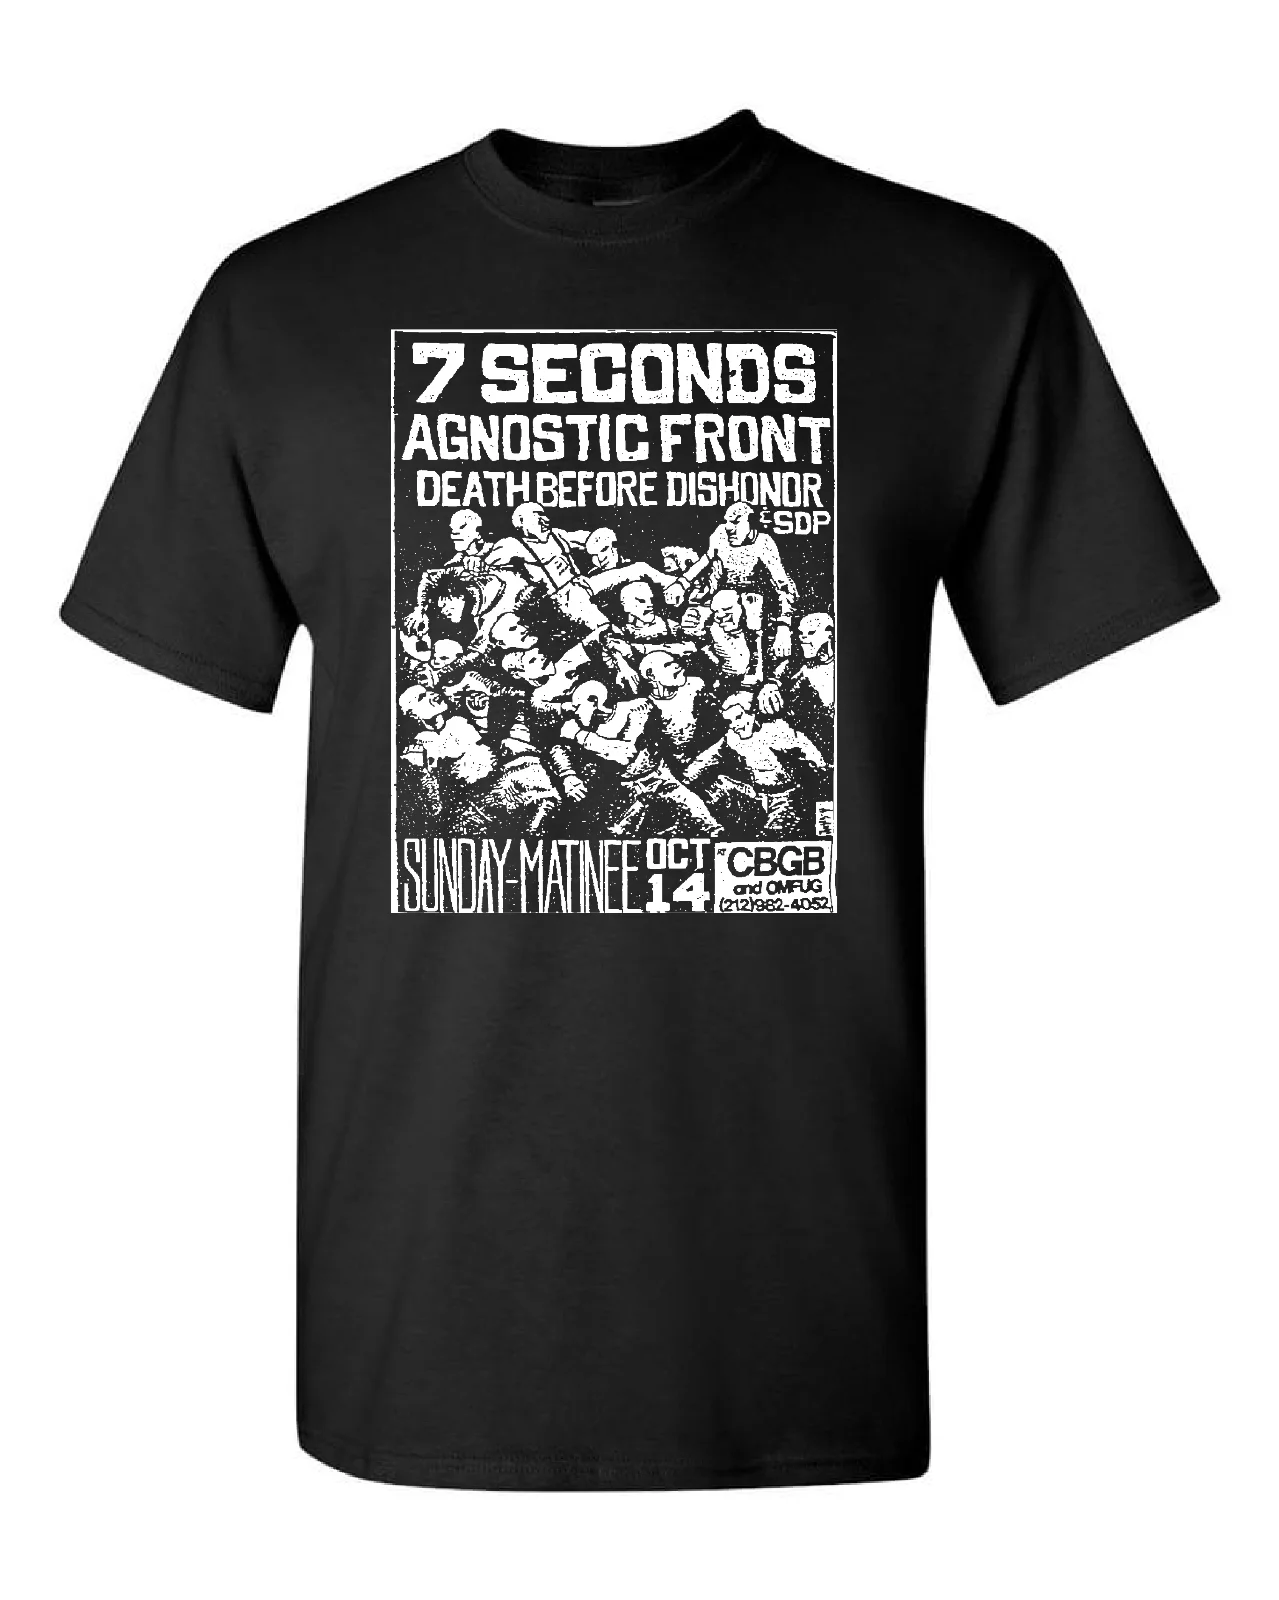 Футболка 7 Seconds Agnostic Front от CBGB, флаер для концерта старого панк-рока, черный